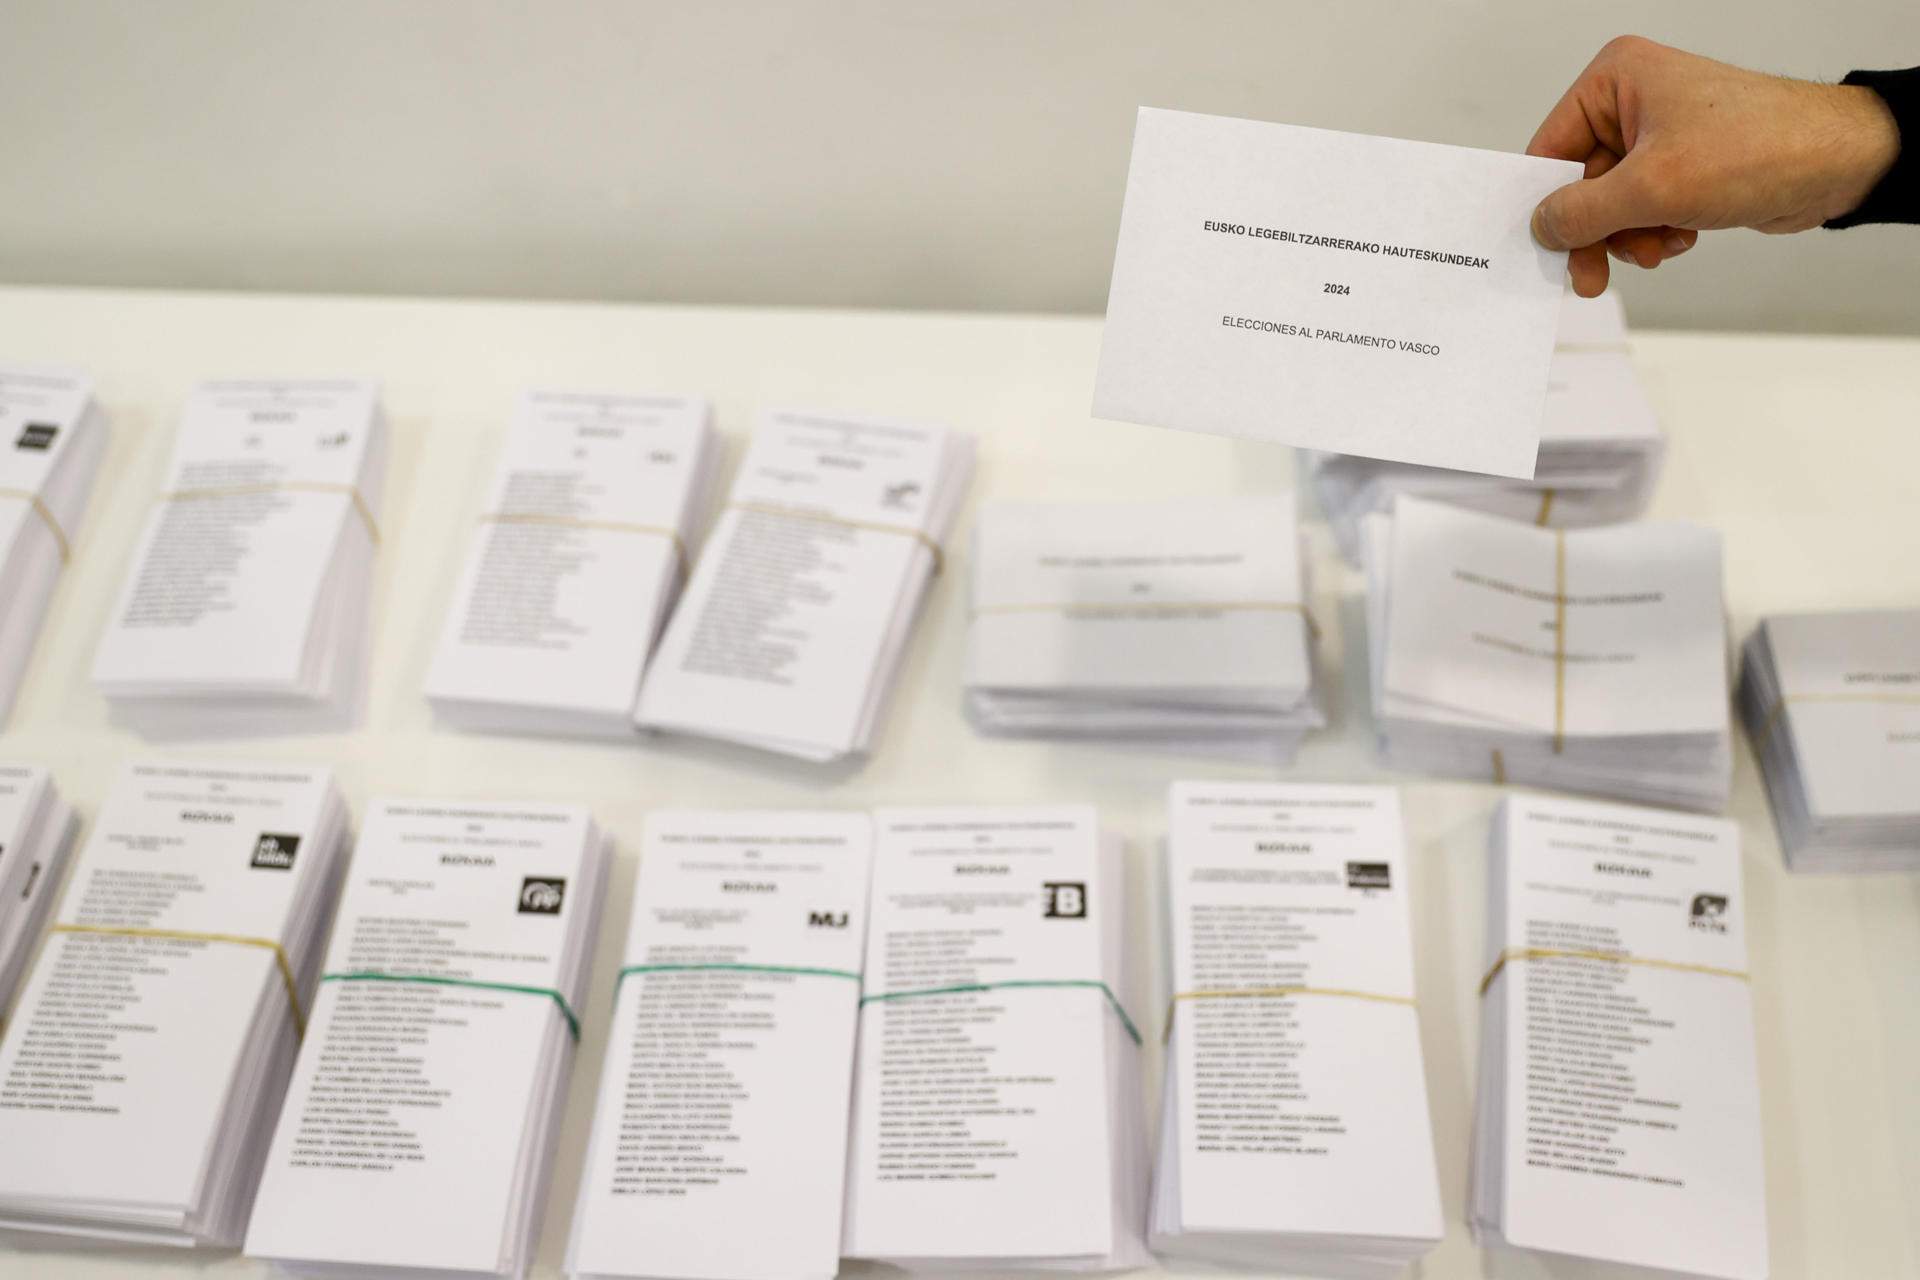 ¿Quién crees que ganará las elecciones en el País Vasco?